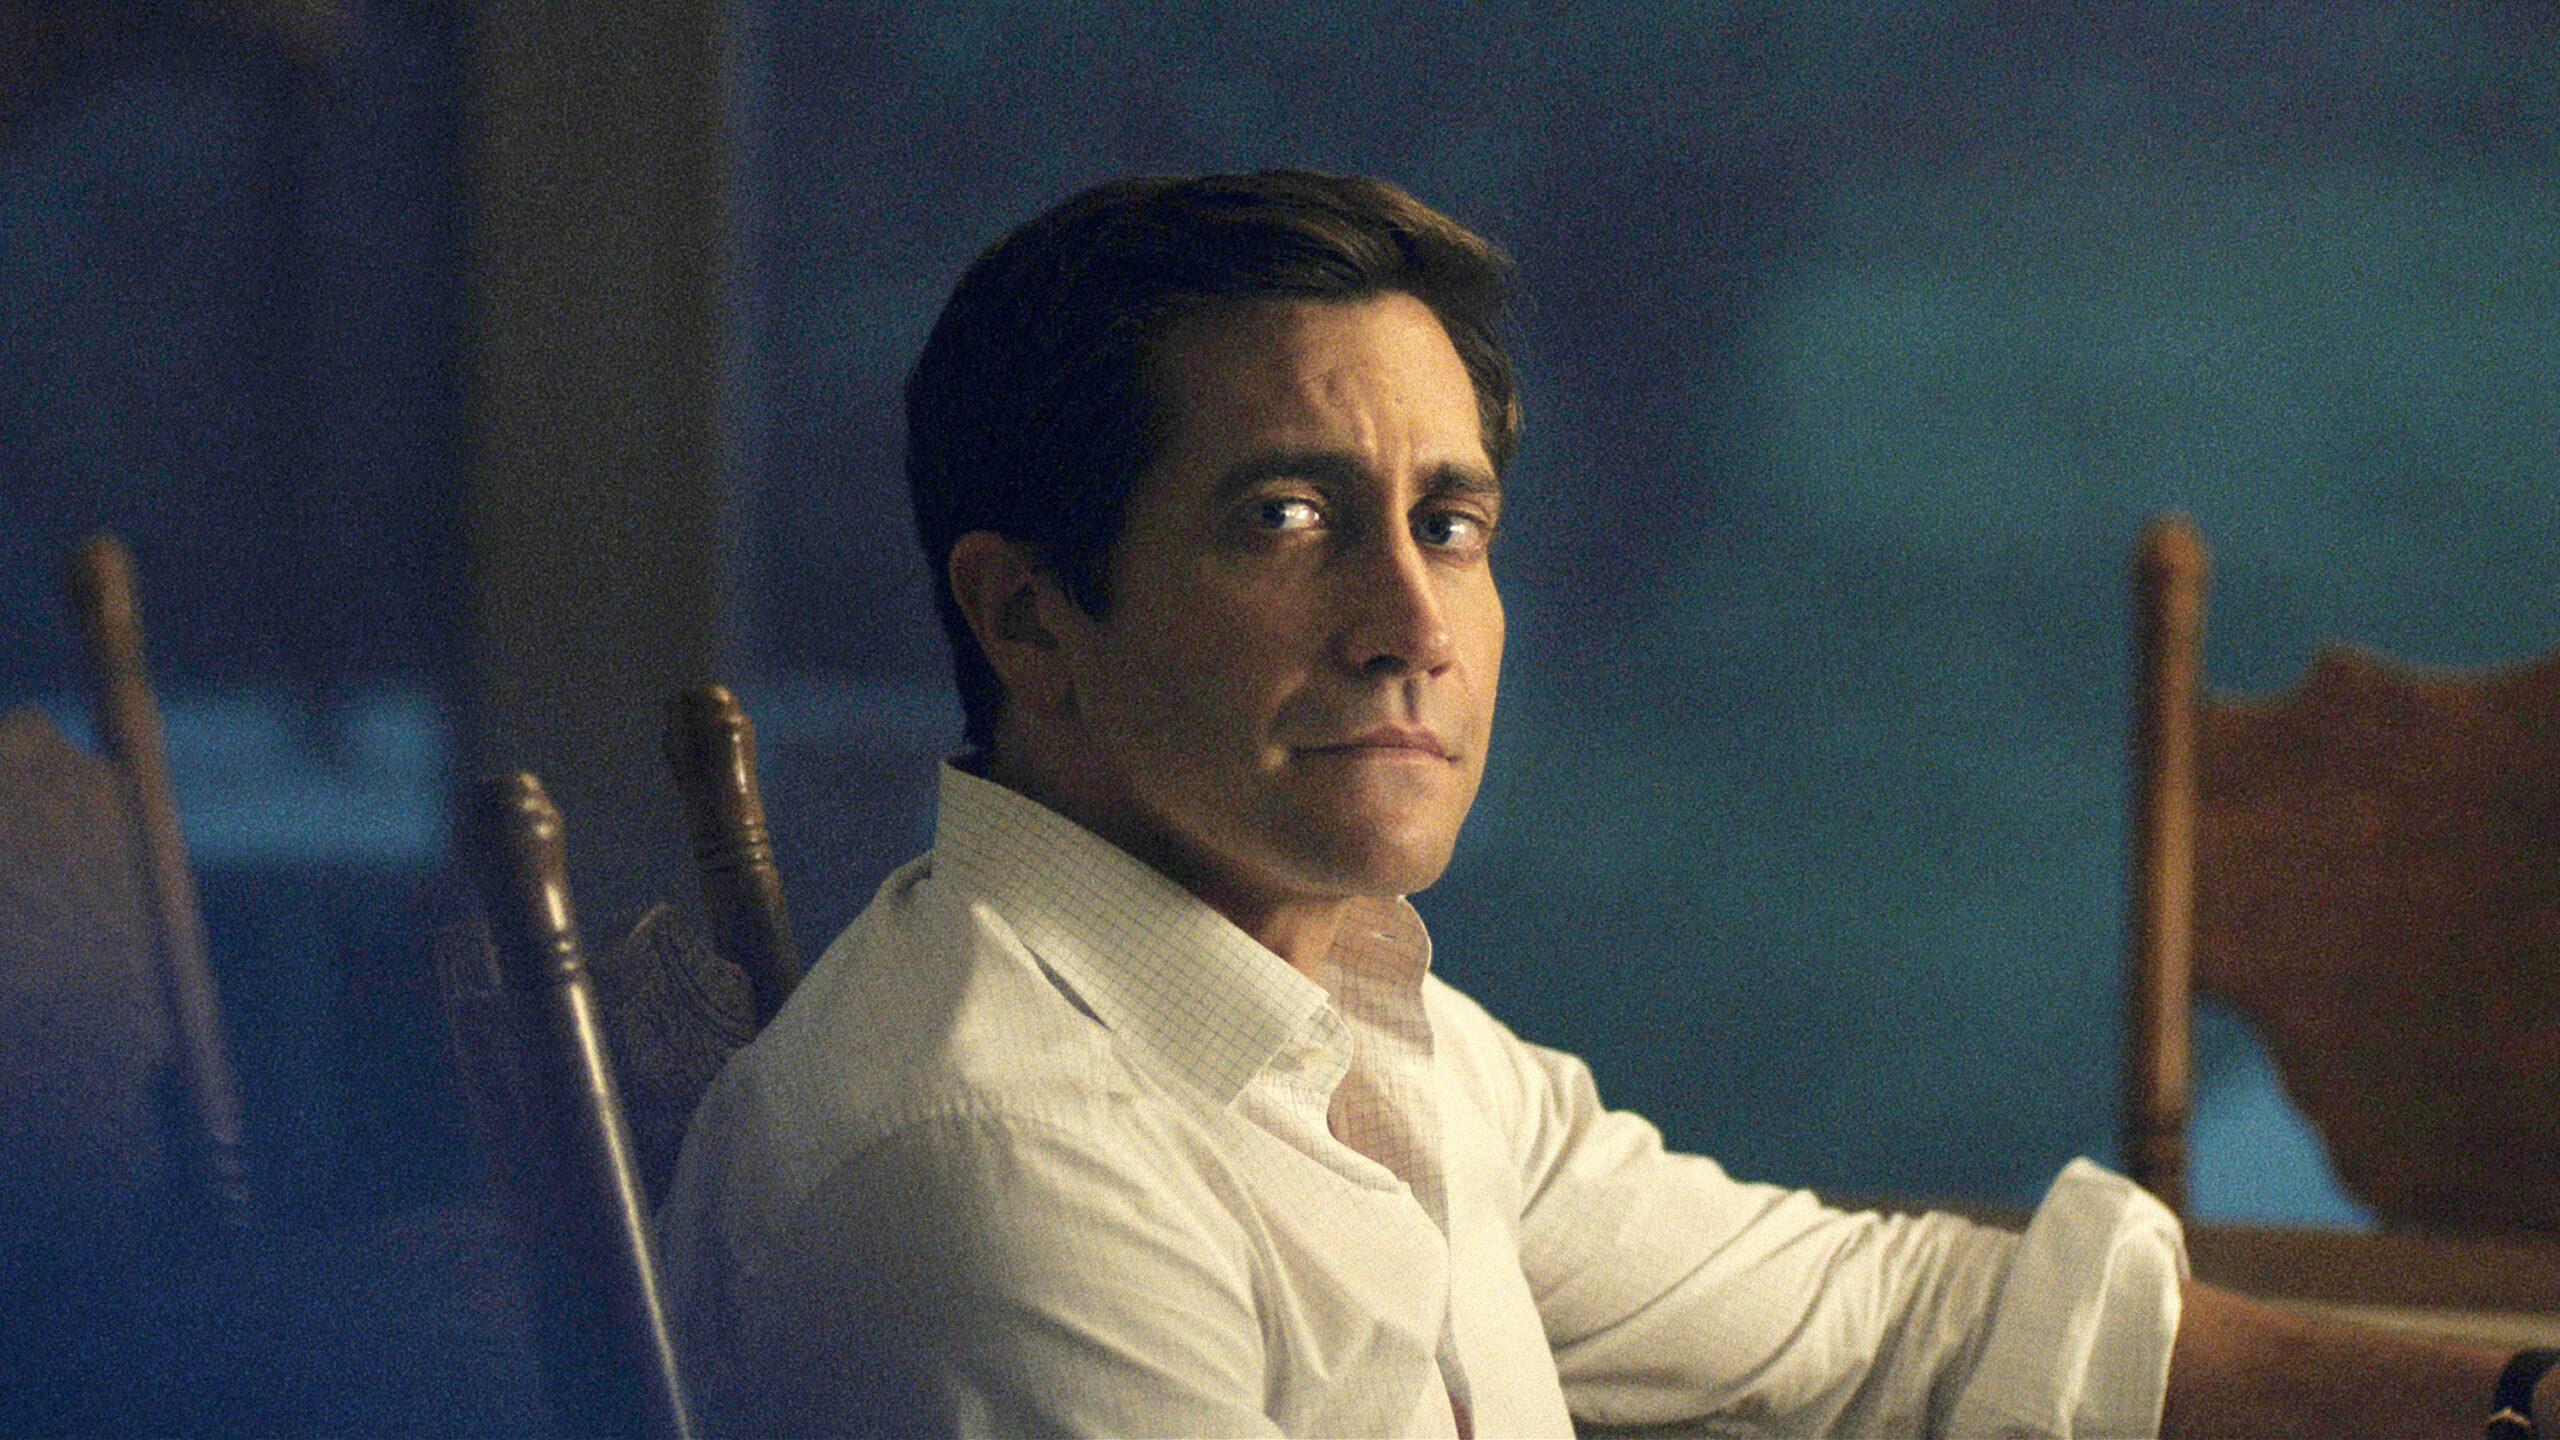 Jake Gyllenhaal Debuts in TV Series with Crime Drama Presumed Innocent